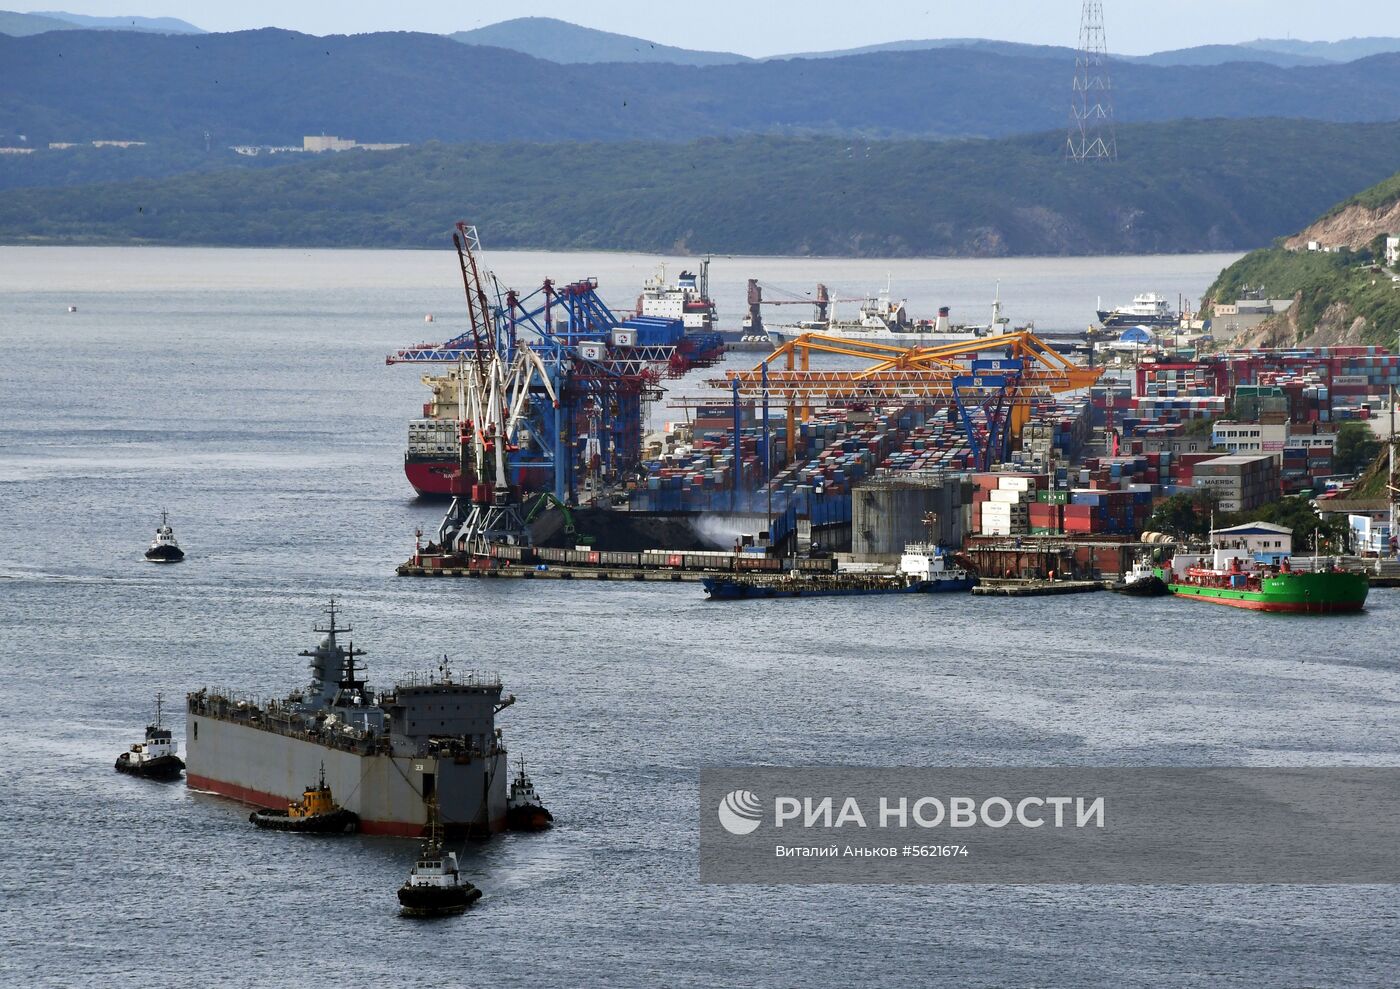 Прибытие корвета "Громкий" во Владивосток